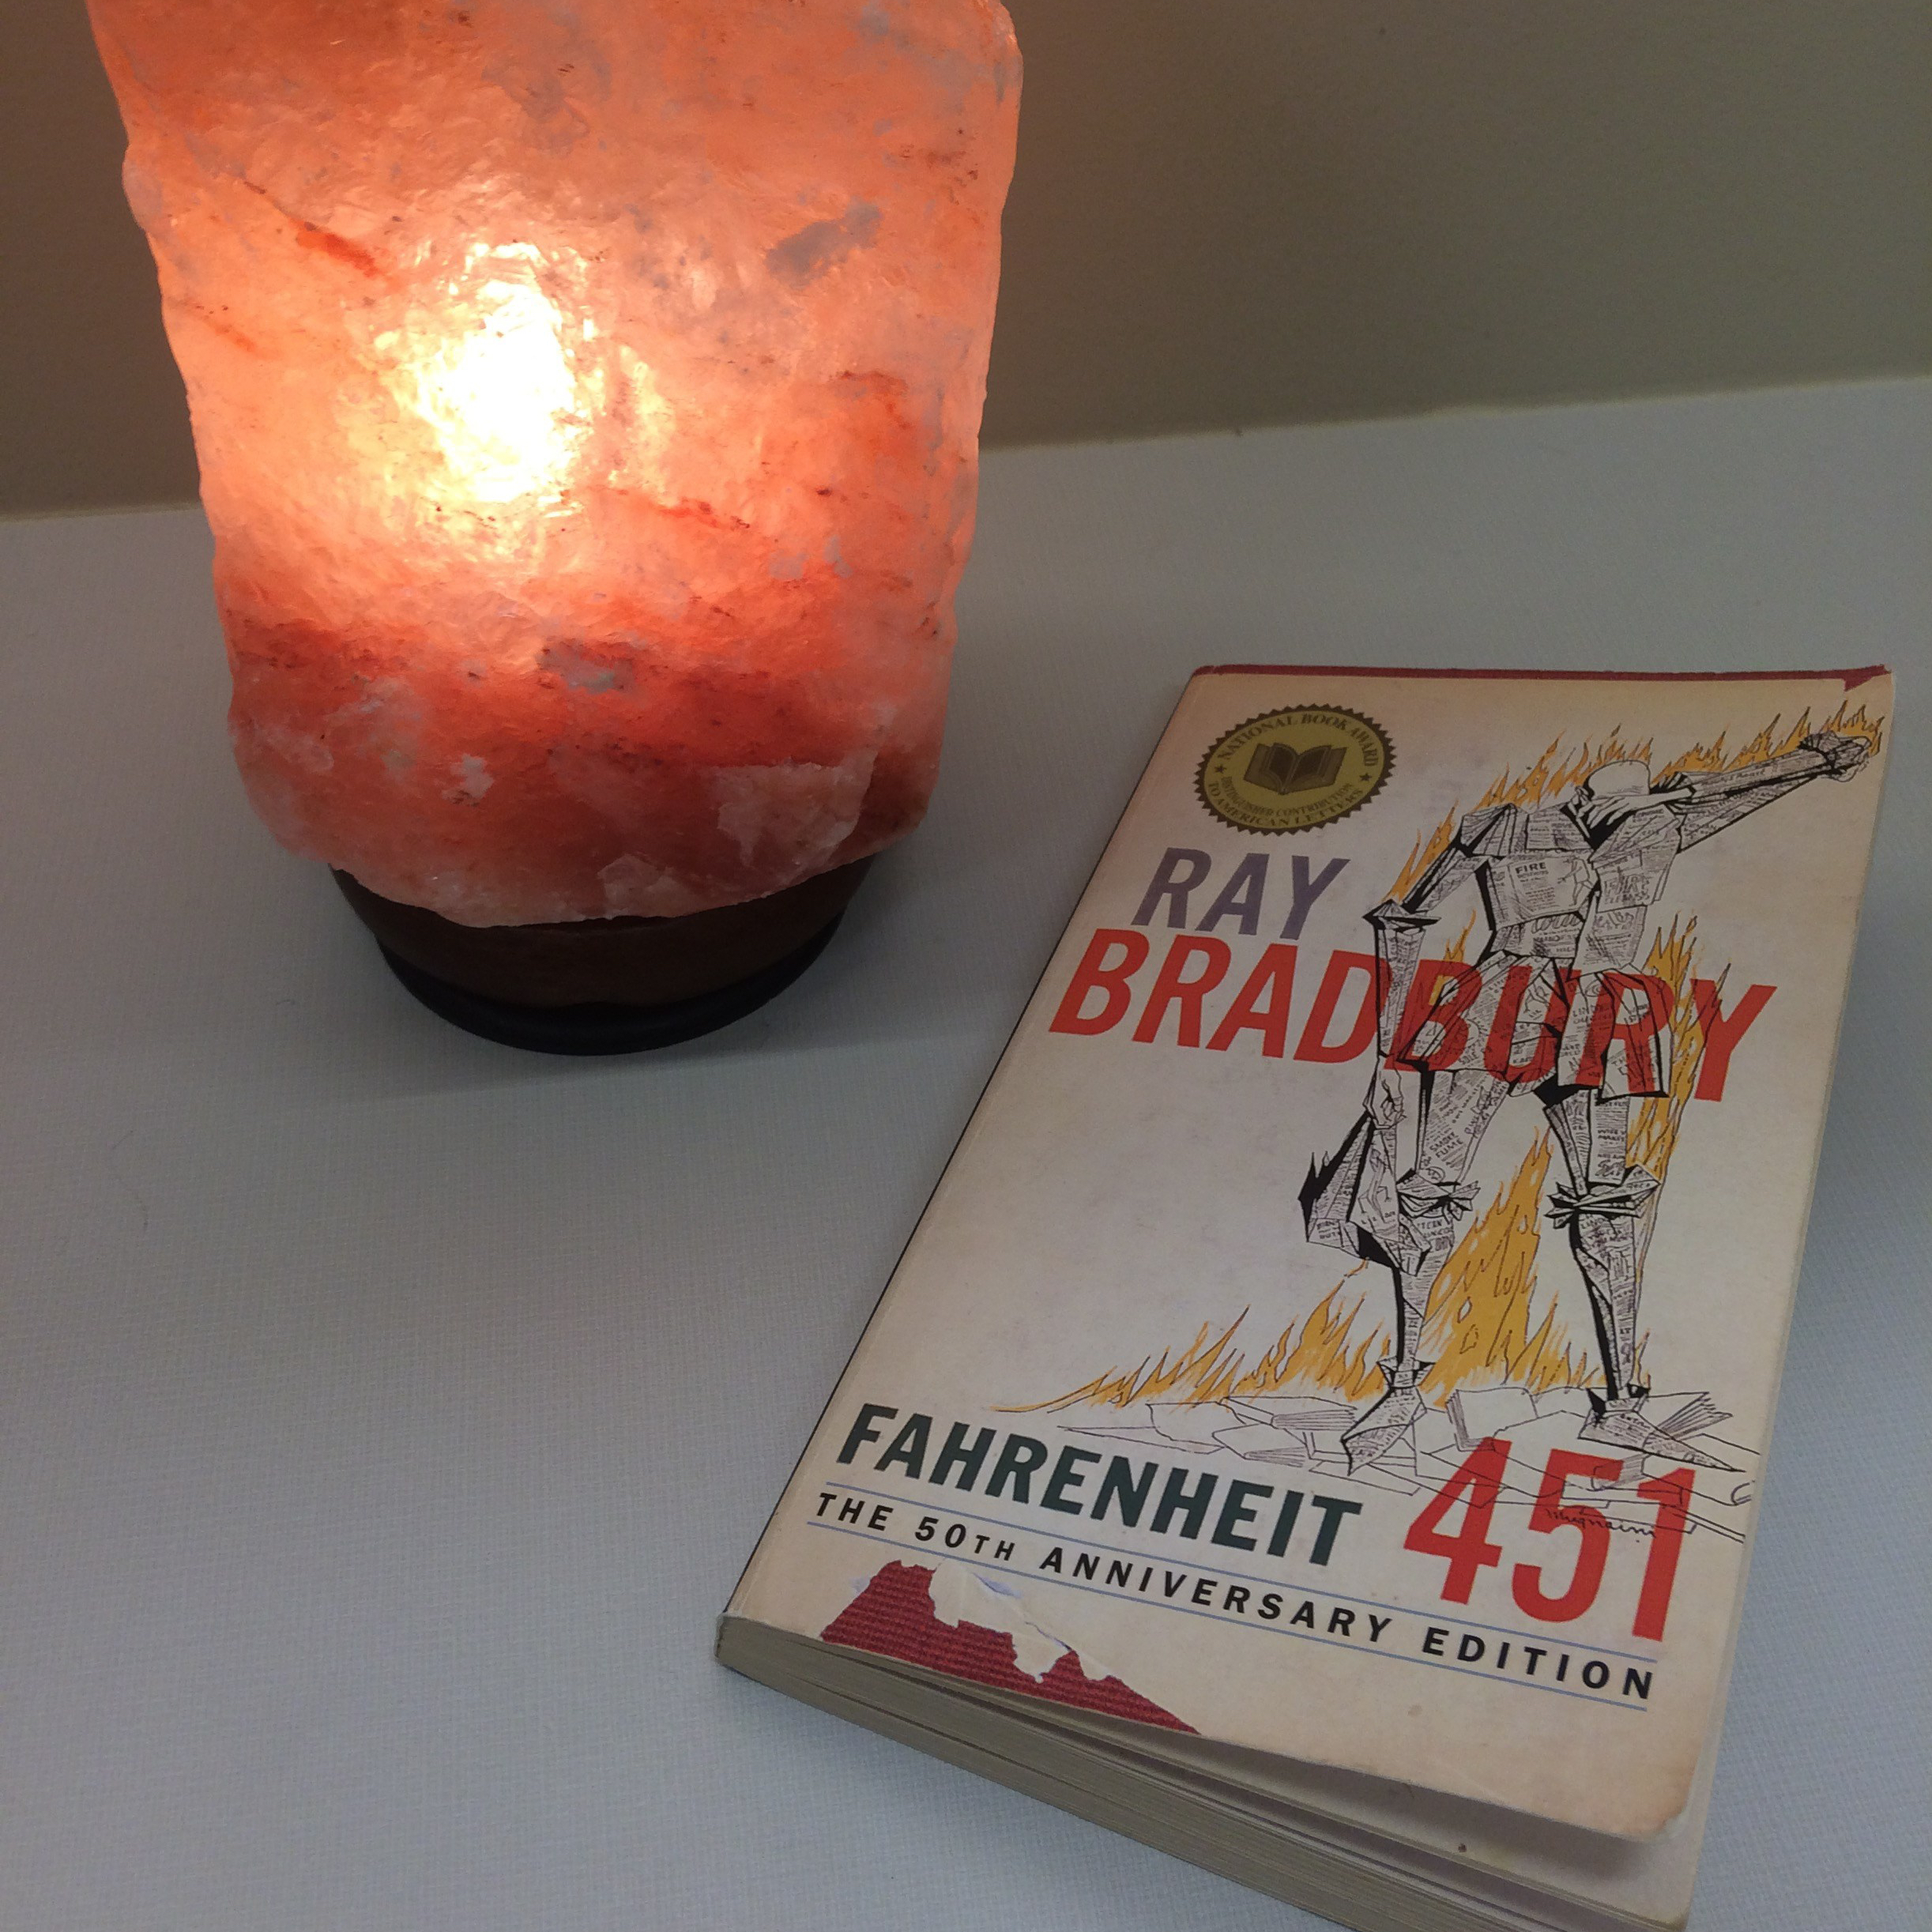 Fahrenheit 451, by Ray Bradbury